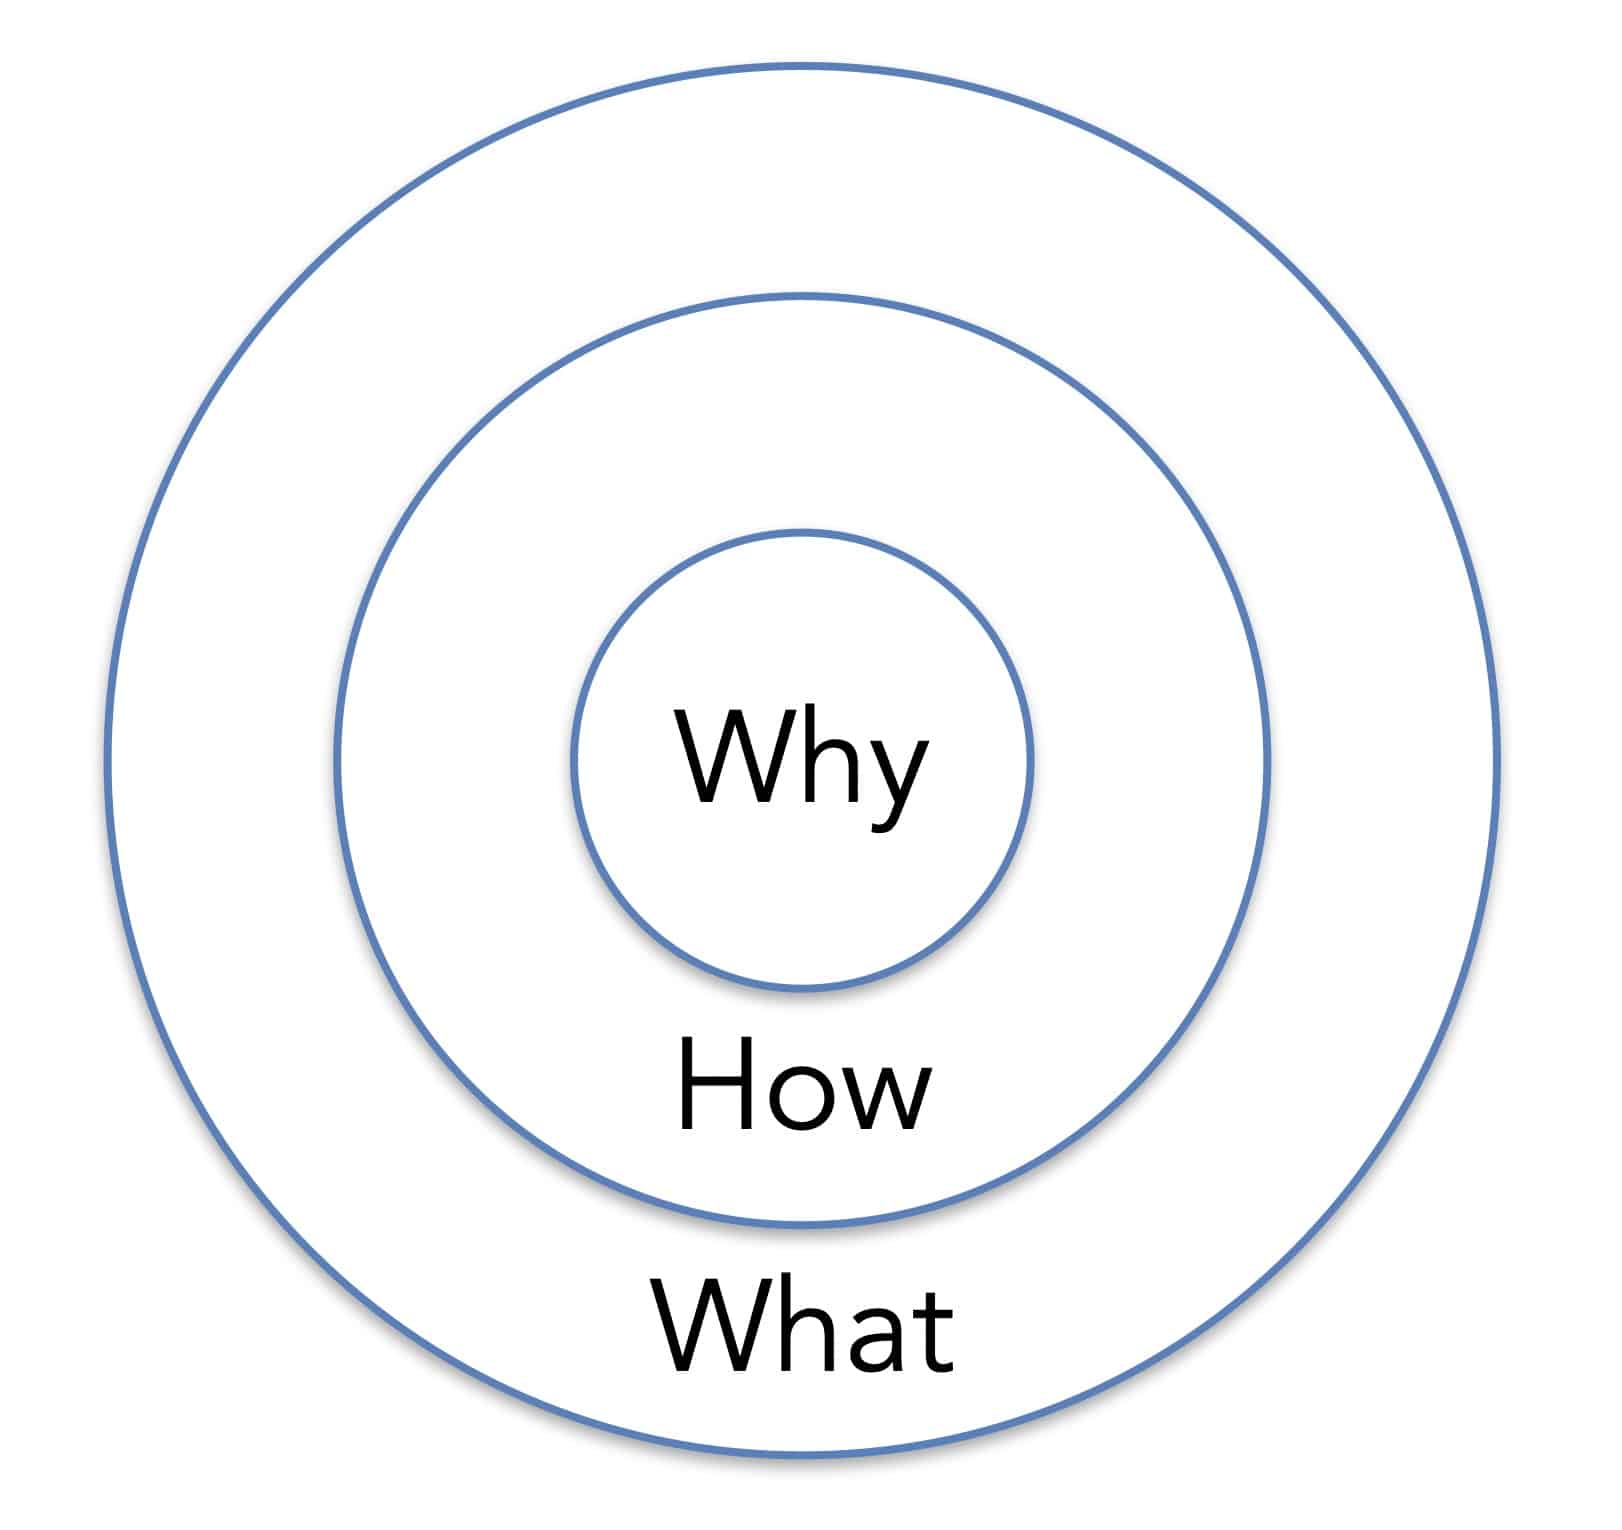 A diagram of the Golden Circle concept.